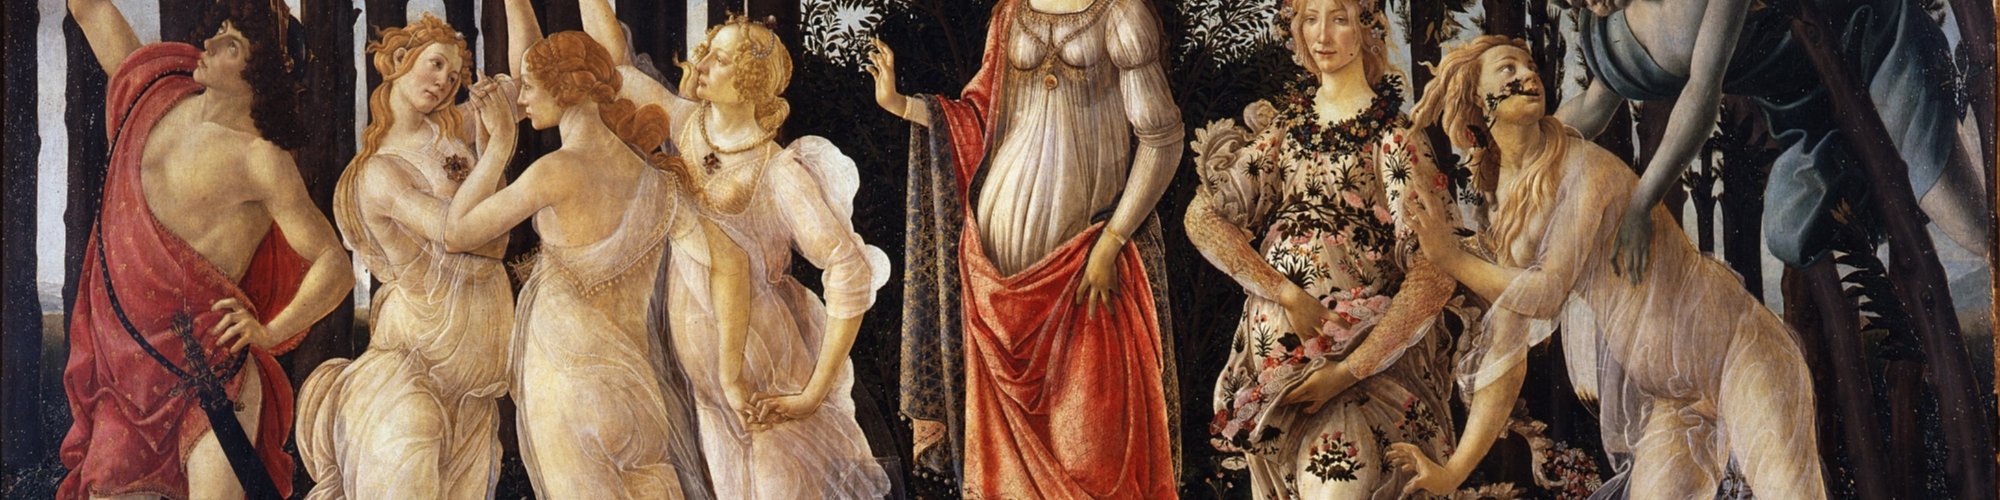 La Primavera de Botticelli - Uffizi